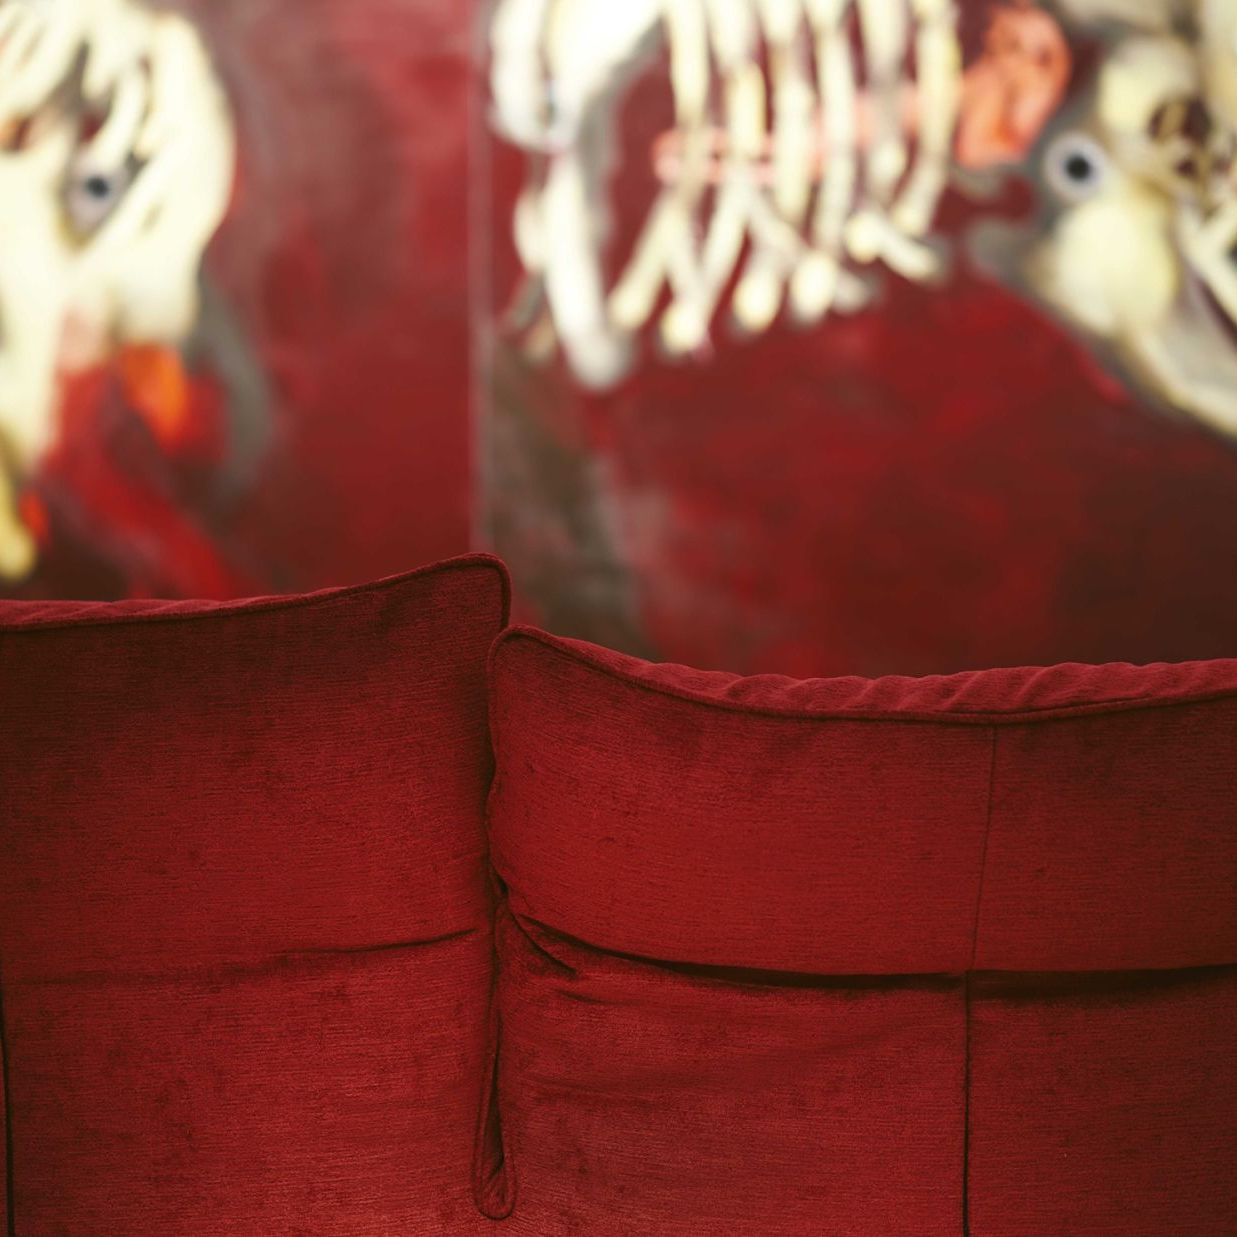   Standway . Un dettaglio del divano fotografato all’interno della Fondazione Sandretto Re Rebaudengo. 